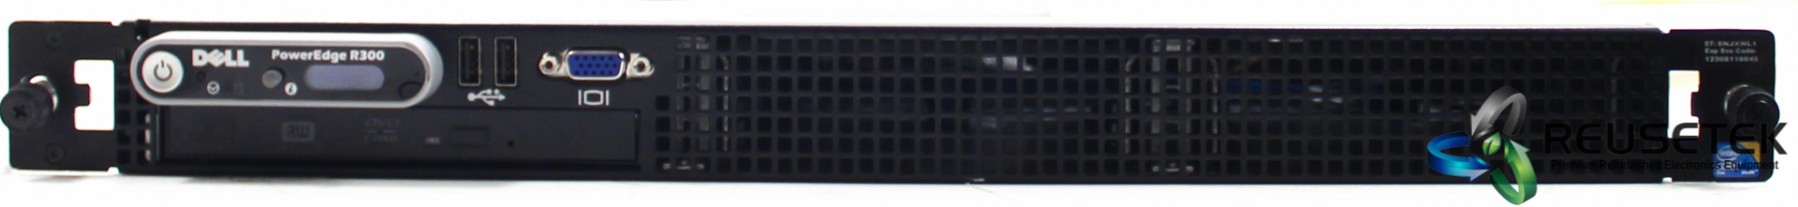 50003175808-Dell PowerEdge R300 Server With Intel Core 2 Duo E6305 Processor-image